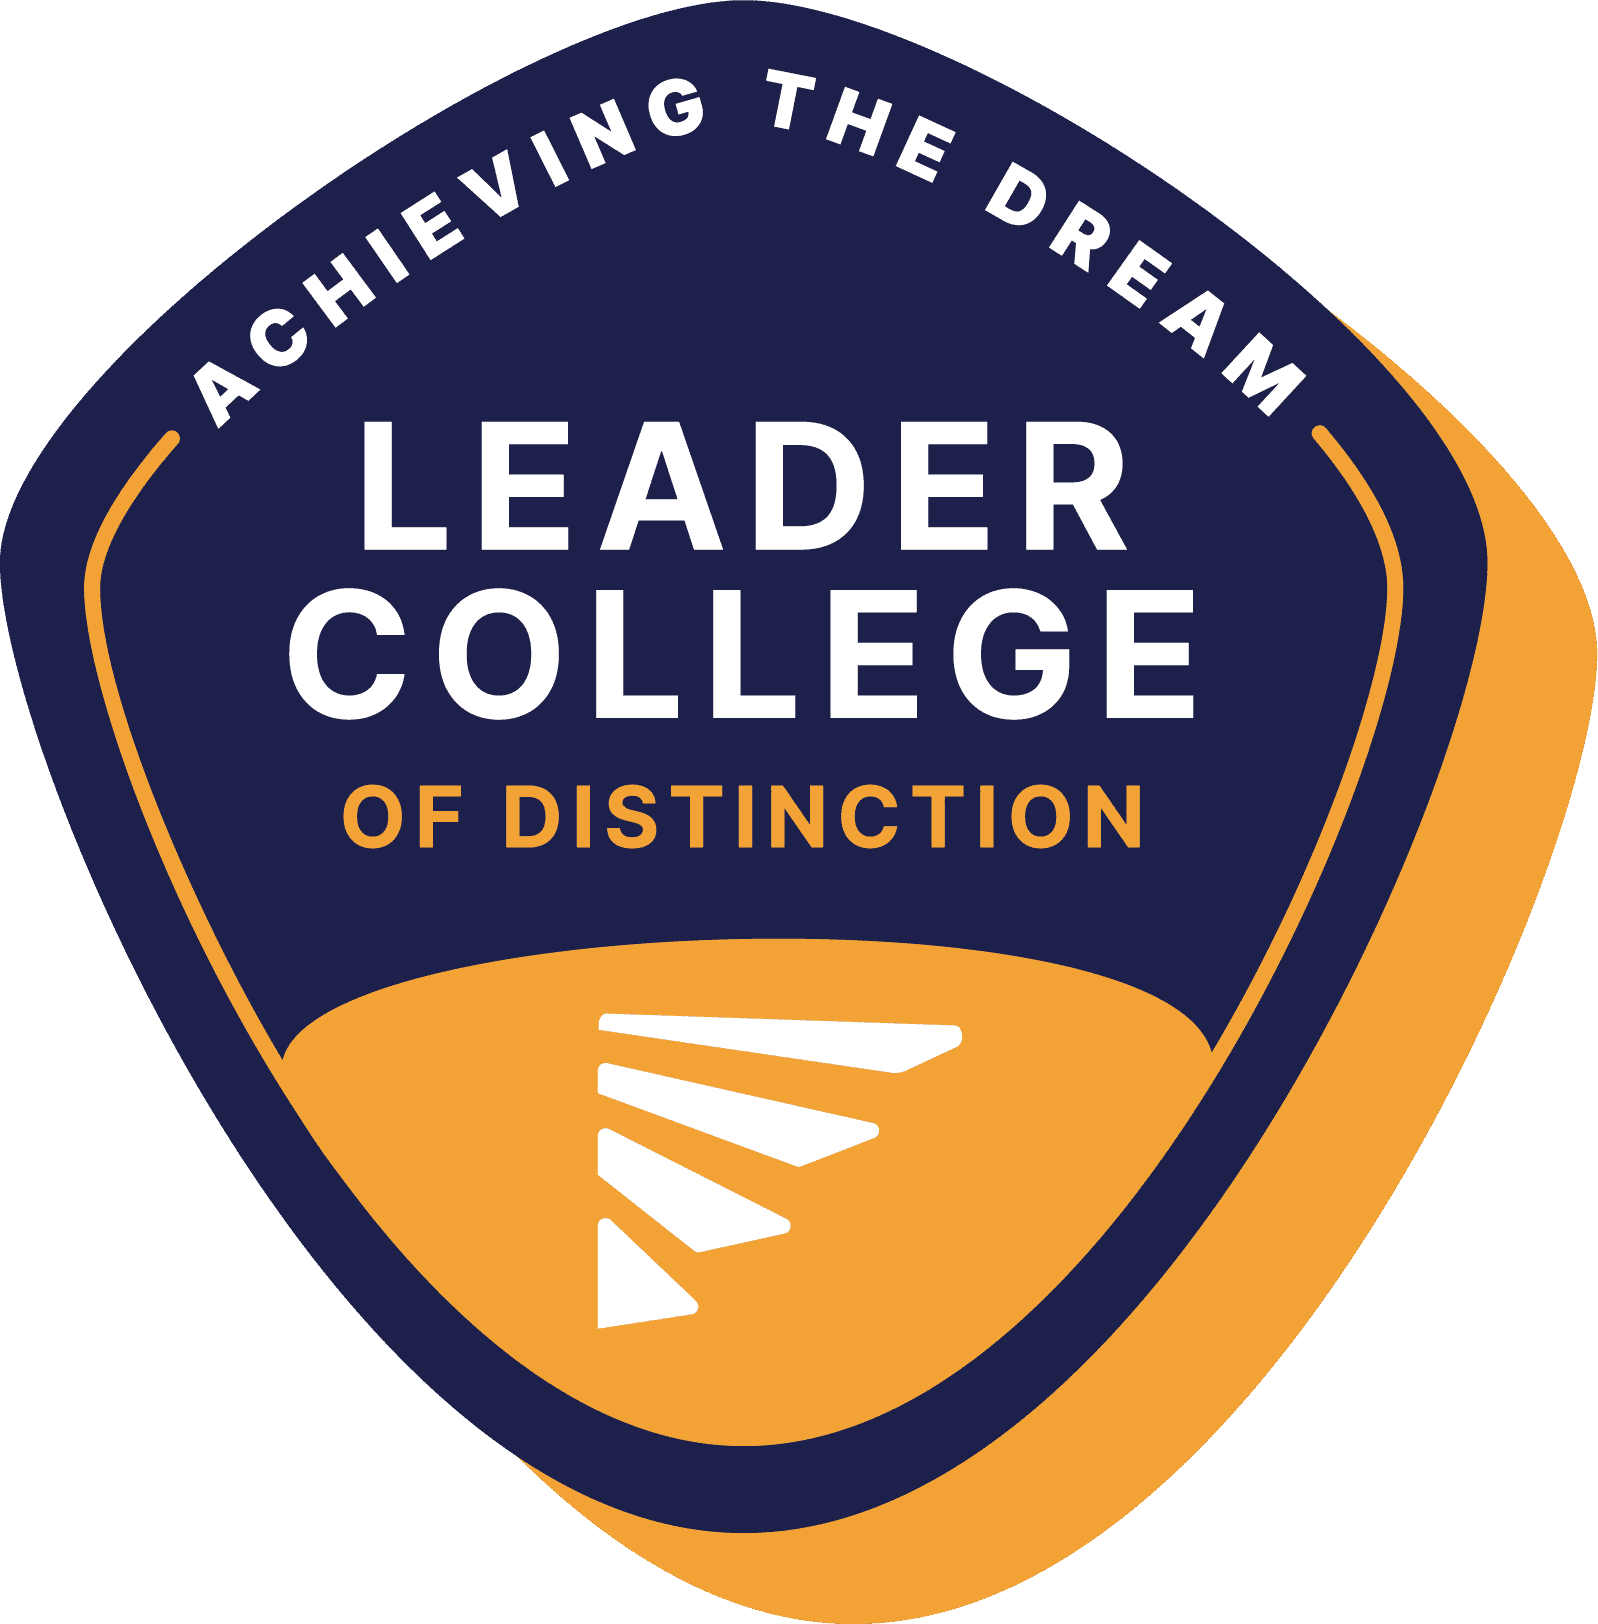 Achieving the Dream Leader College. ECC es una universidad líder.